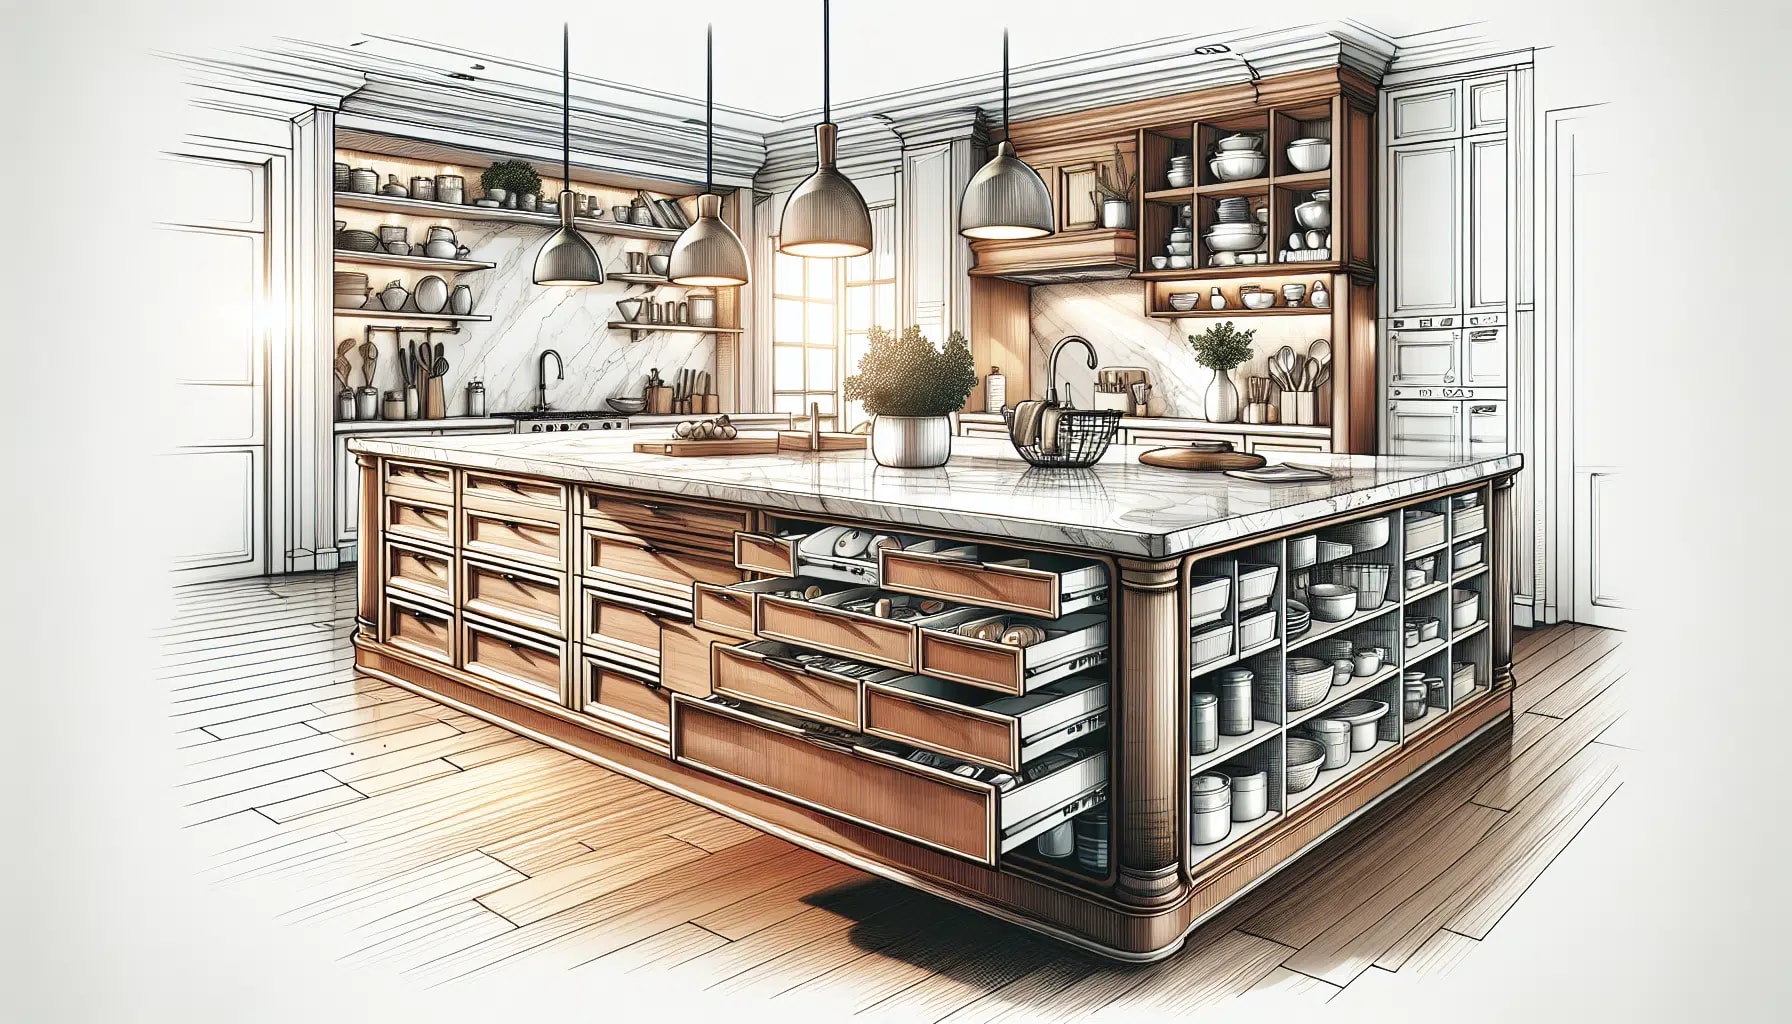 Versatile kitchen island with storage and workspace